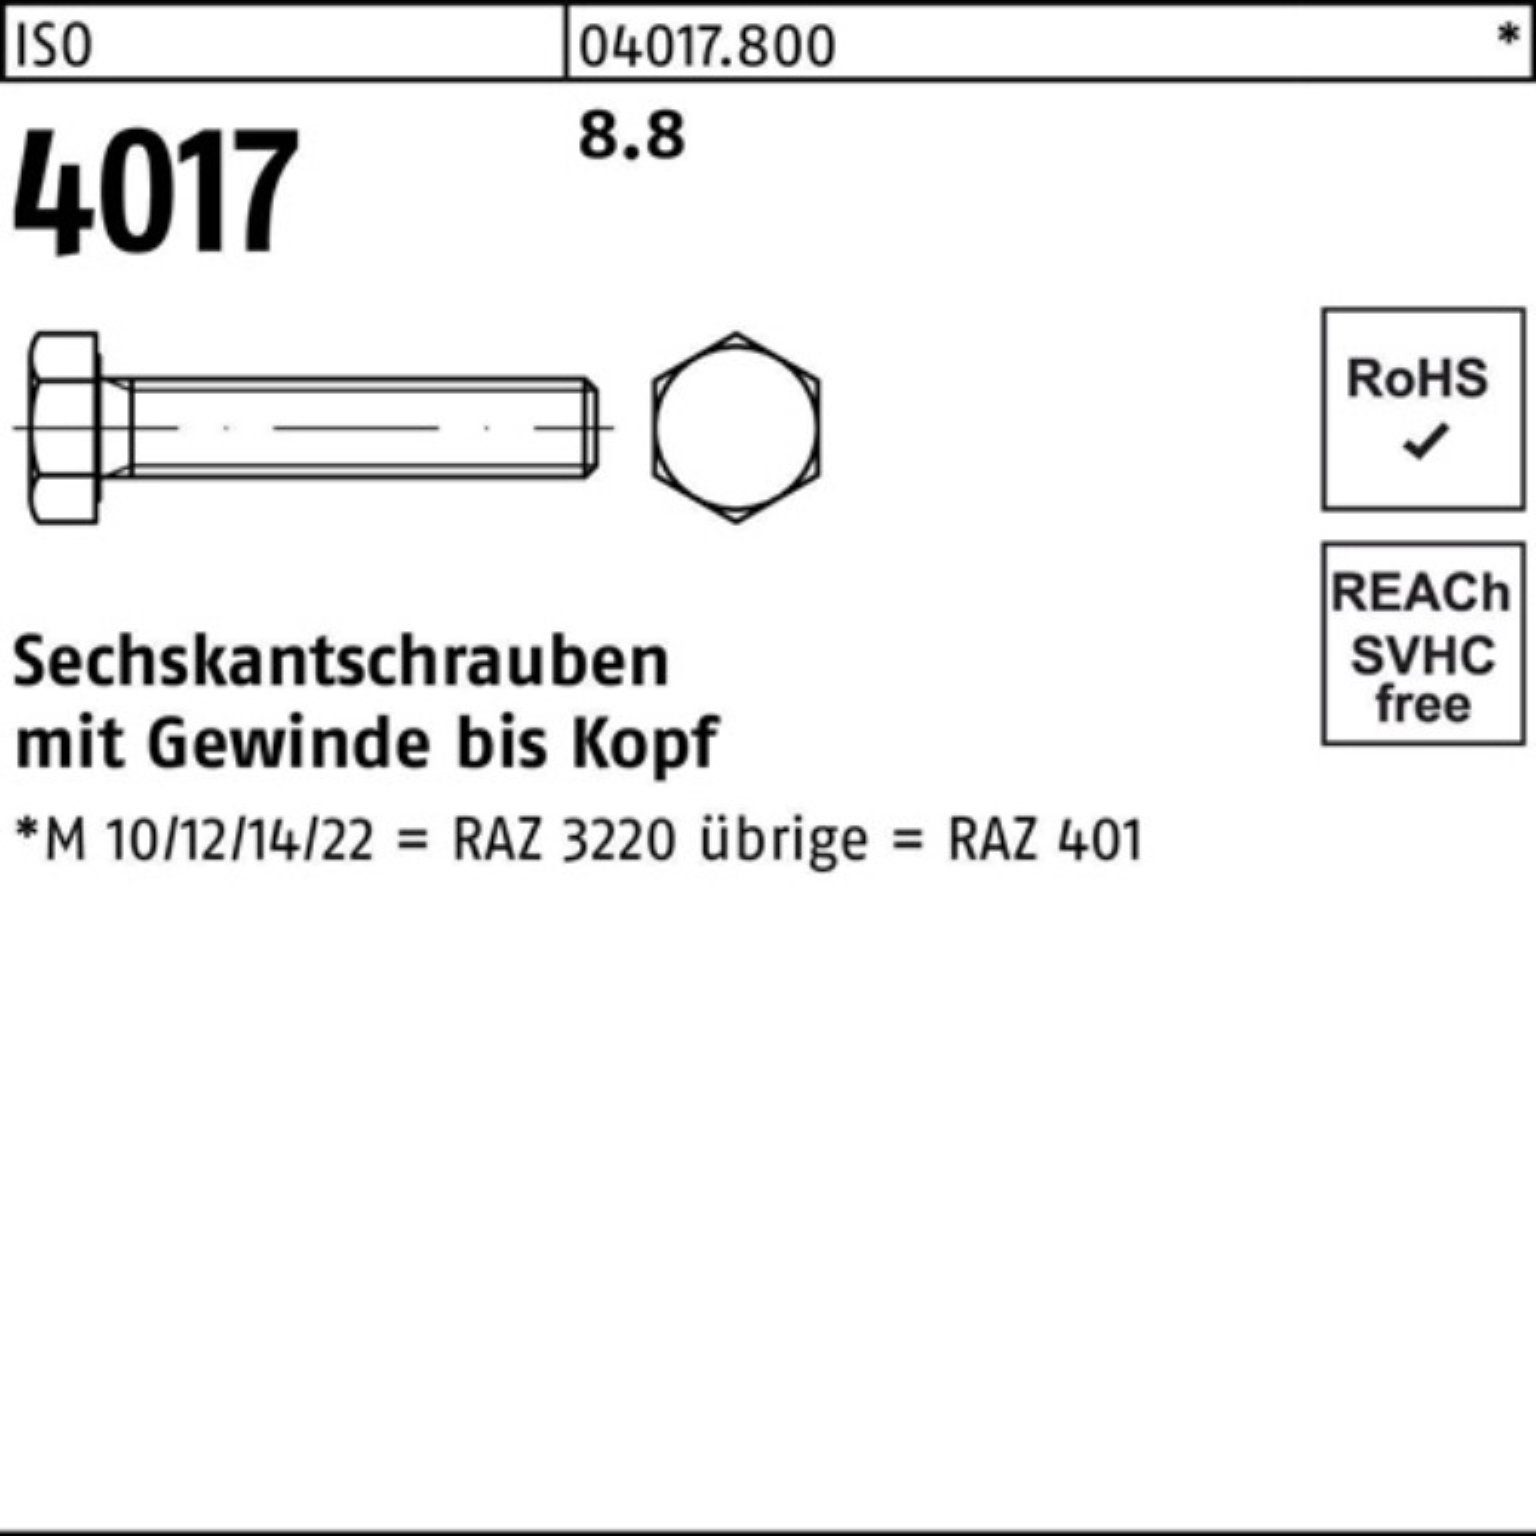 Stück M20x 220 Bufab 8.8 Sechskantschraube VG 4017 100er 401 ISO 1 Sechskantschraube Pack ISO